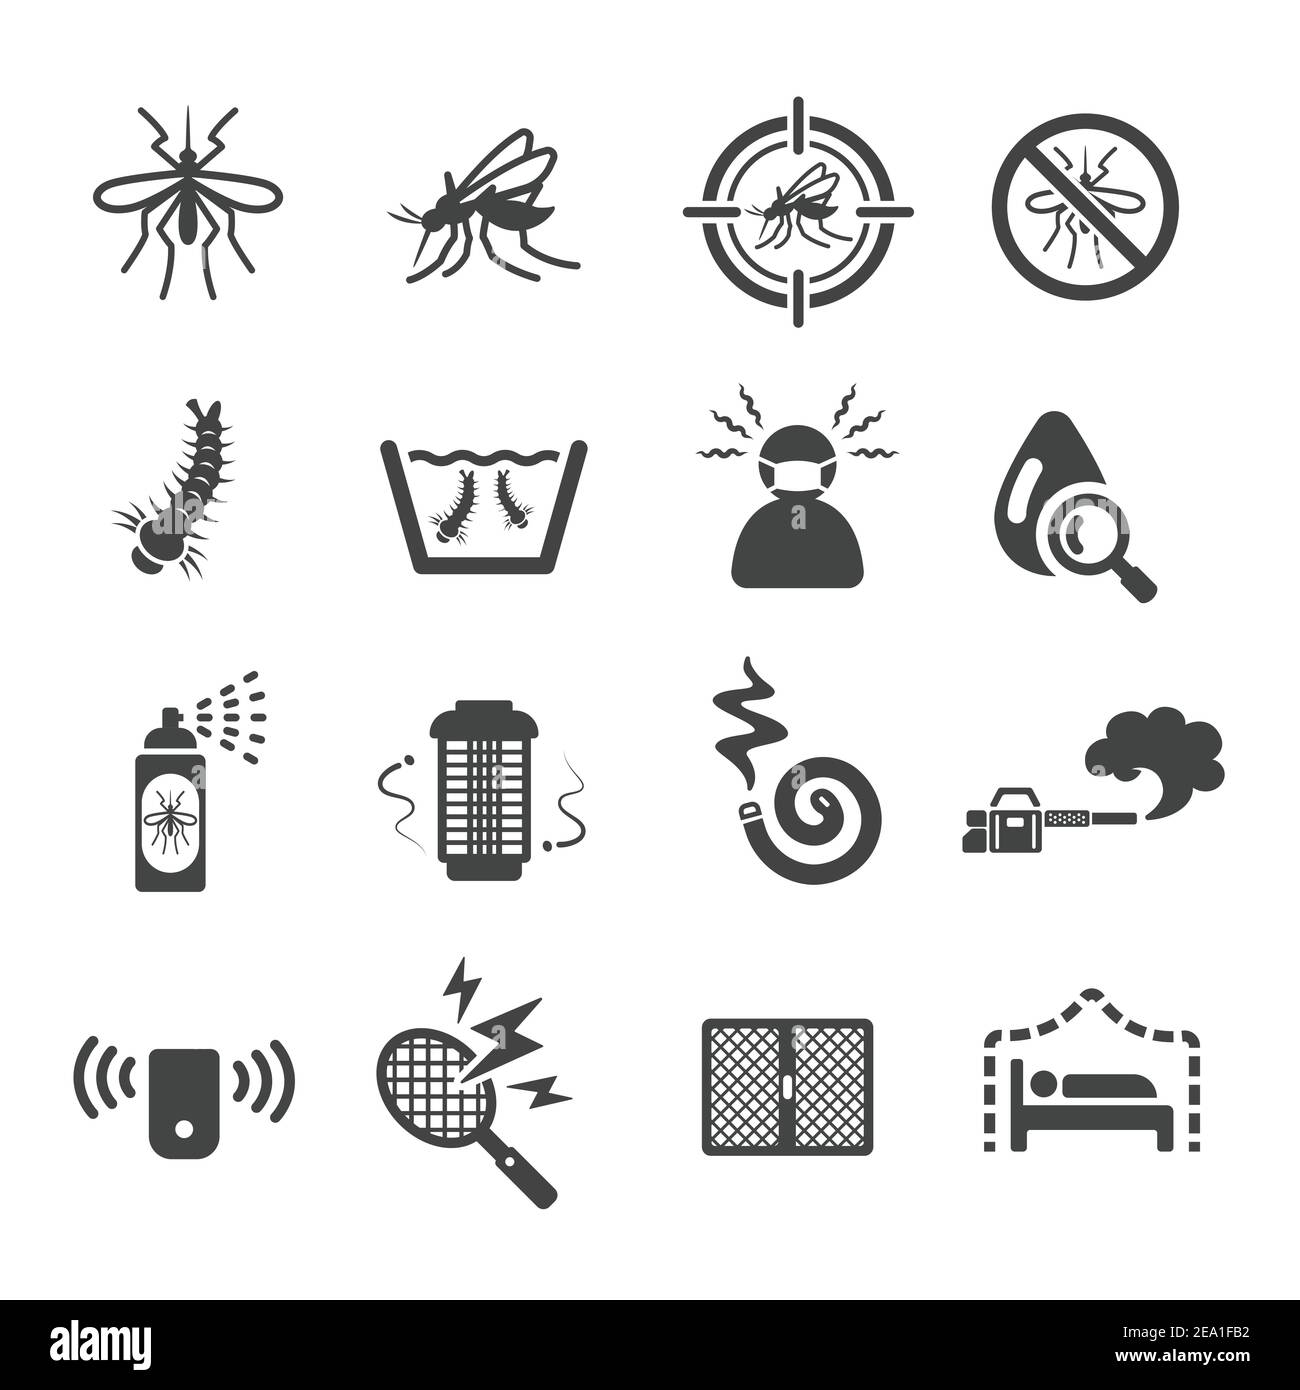 mosquito icon Stock Vector